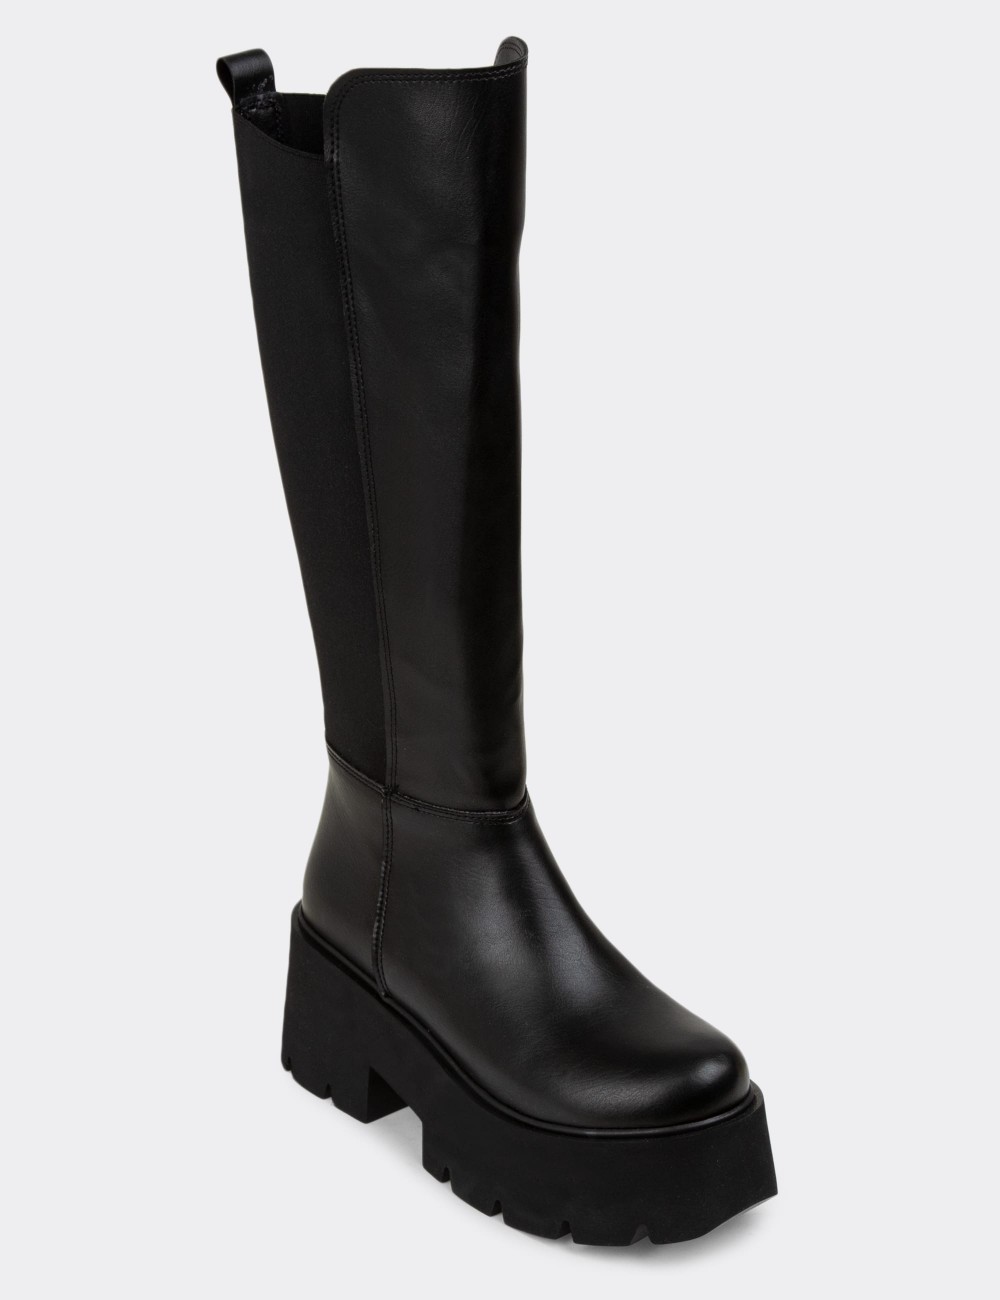 Black Boots - K1607ZSYHE01